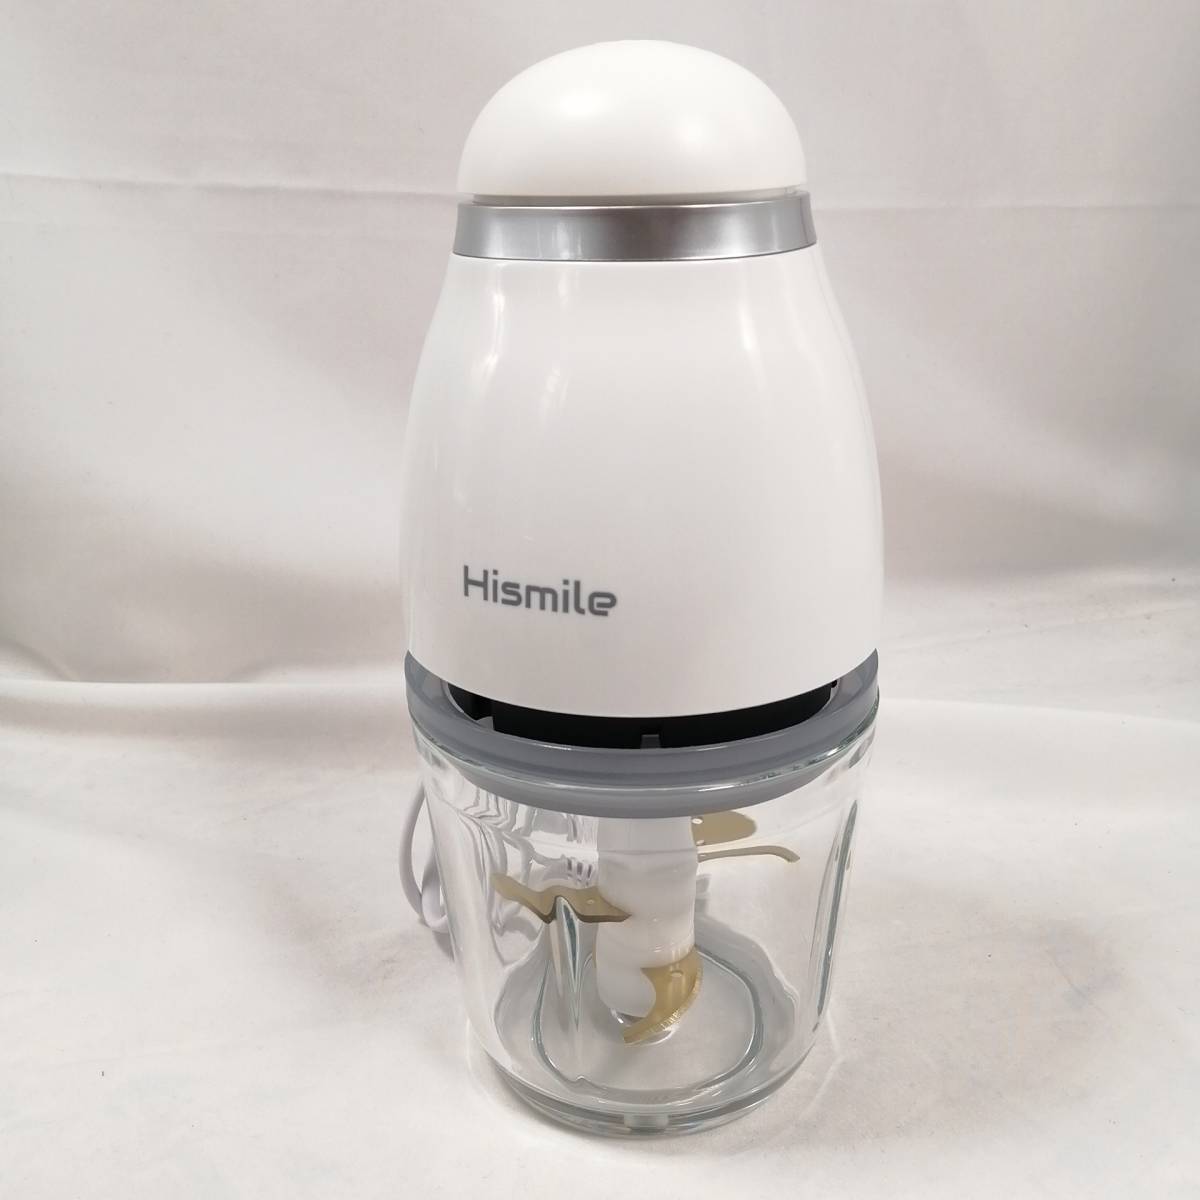 Hismile コンパクトフードプロセッサー 氷も砕ける ガラスカップと樹脂カップ二個付き チタンコートカッター HS-FP3M【ジャンク】a08400の画像1